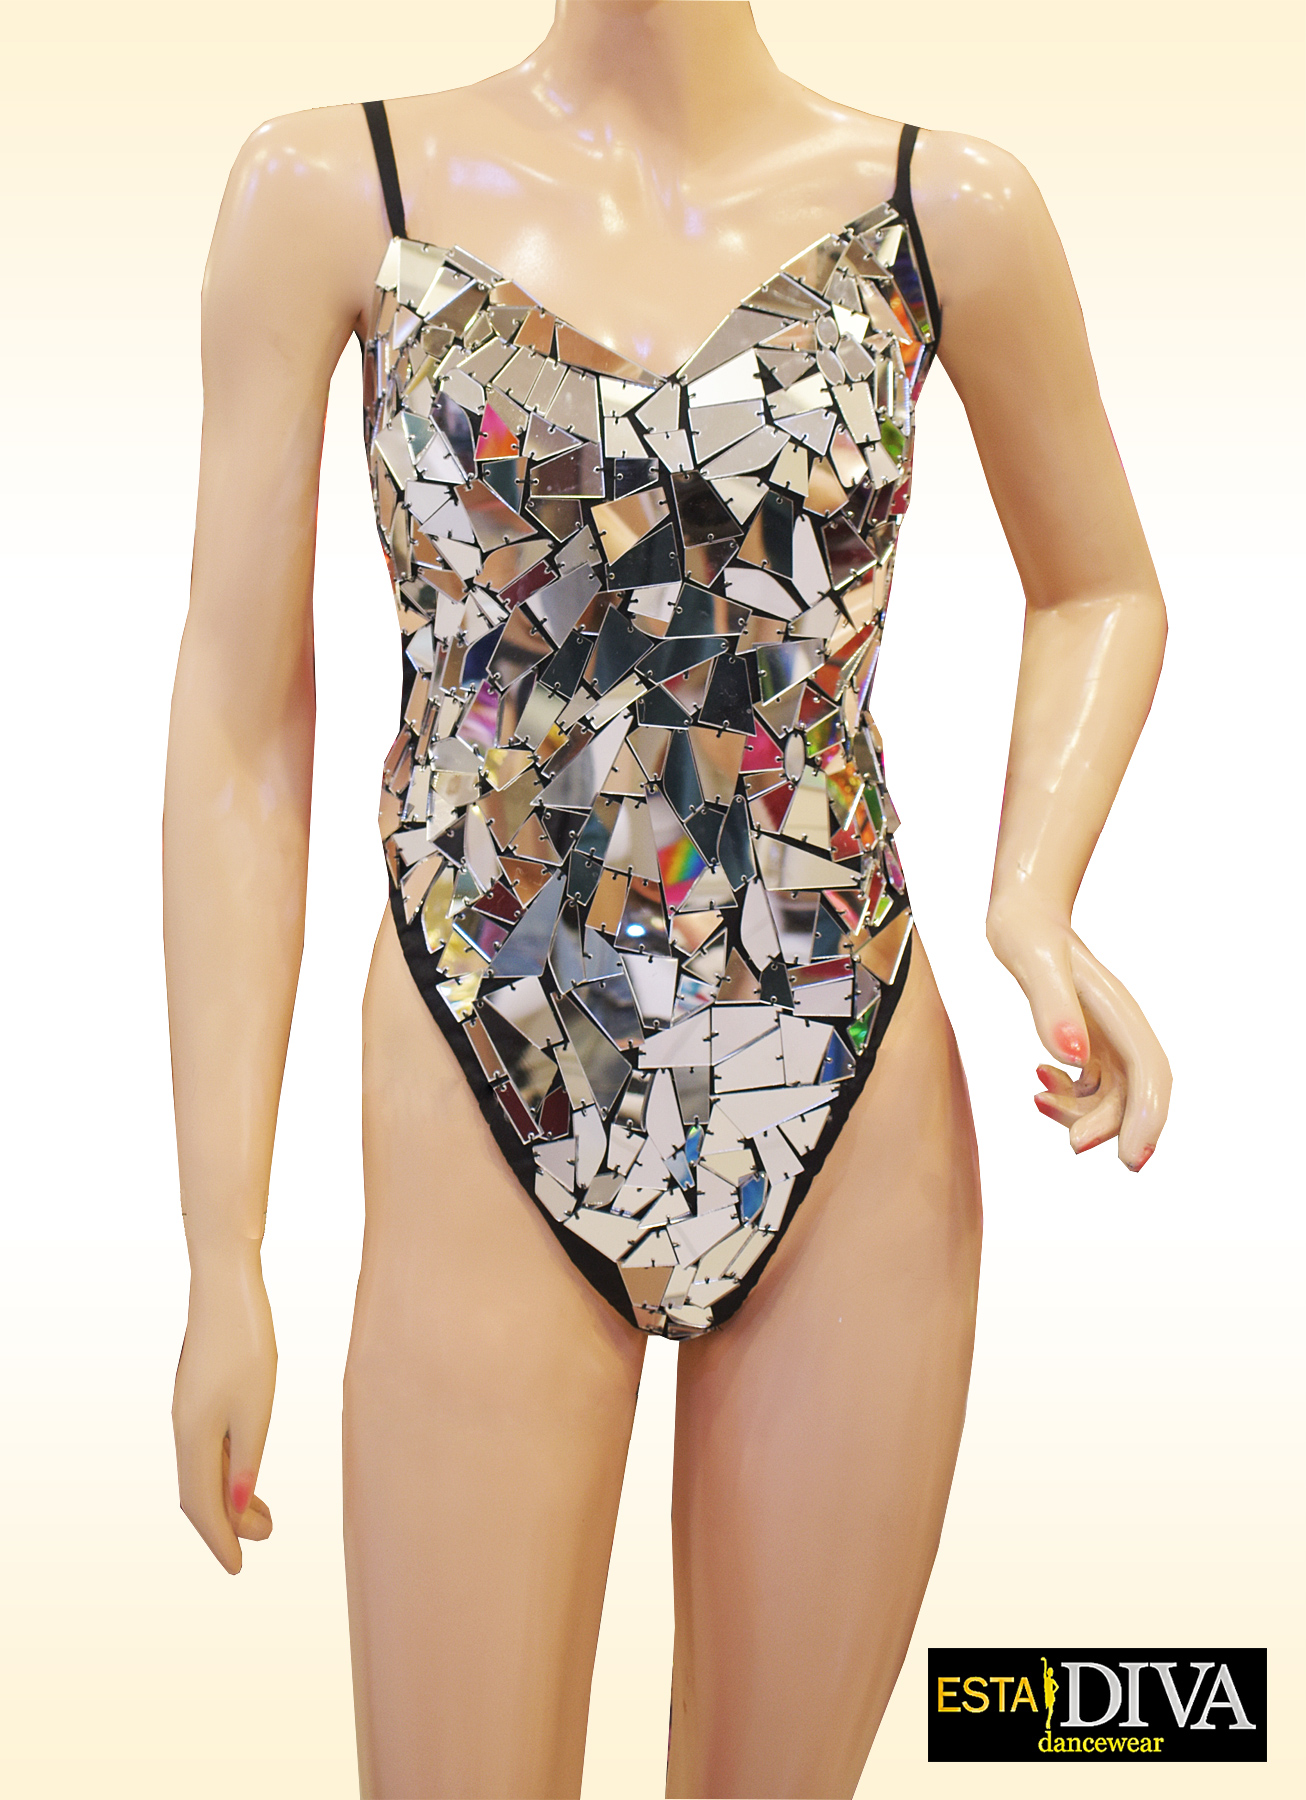 Spiegel Bodysuit - Espejo Spiegel Bodysuit Espejo [mirror-bodysuit-1] -  €168.00 - ESTA DIVA Dancewear! Tanzkleidung & Showkleidung, Lateinkleider  und Tanzsportkleidung